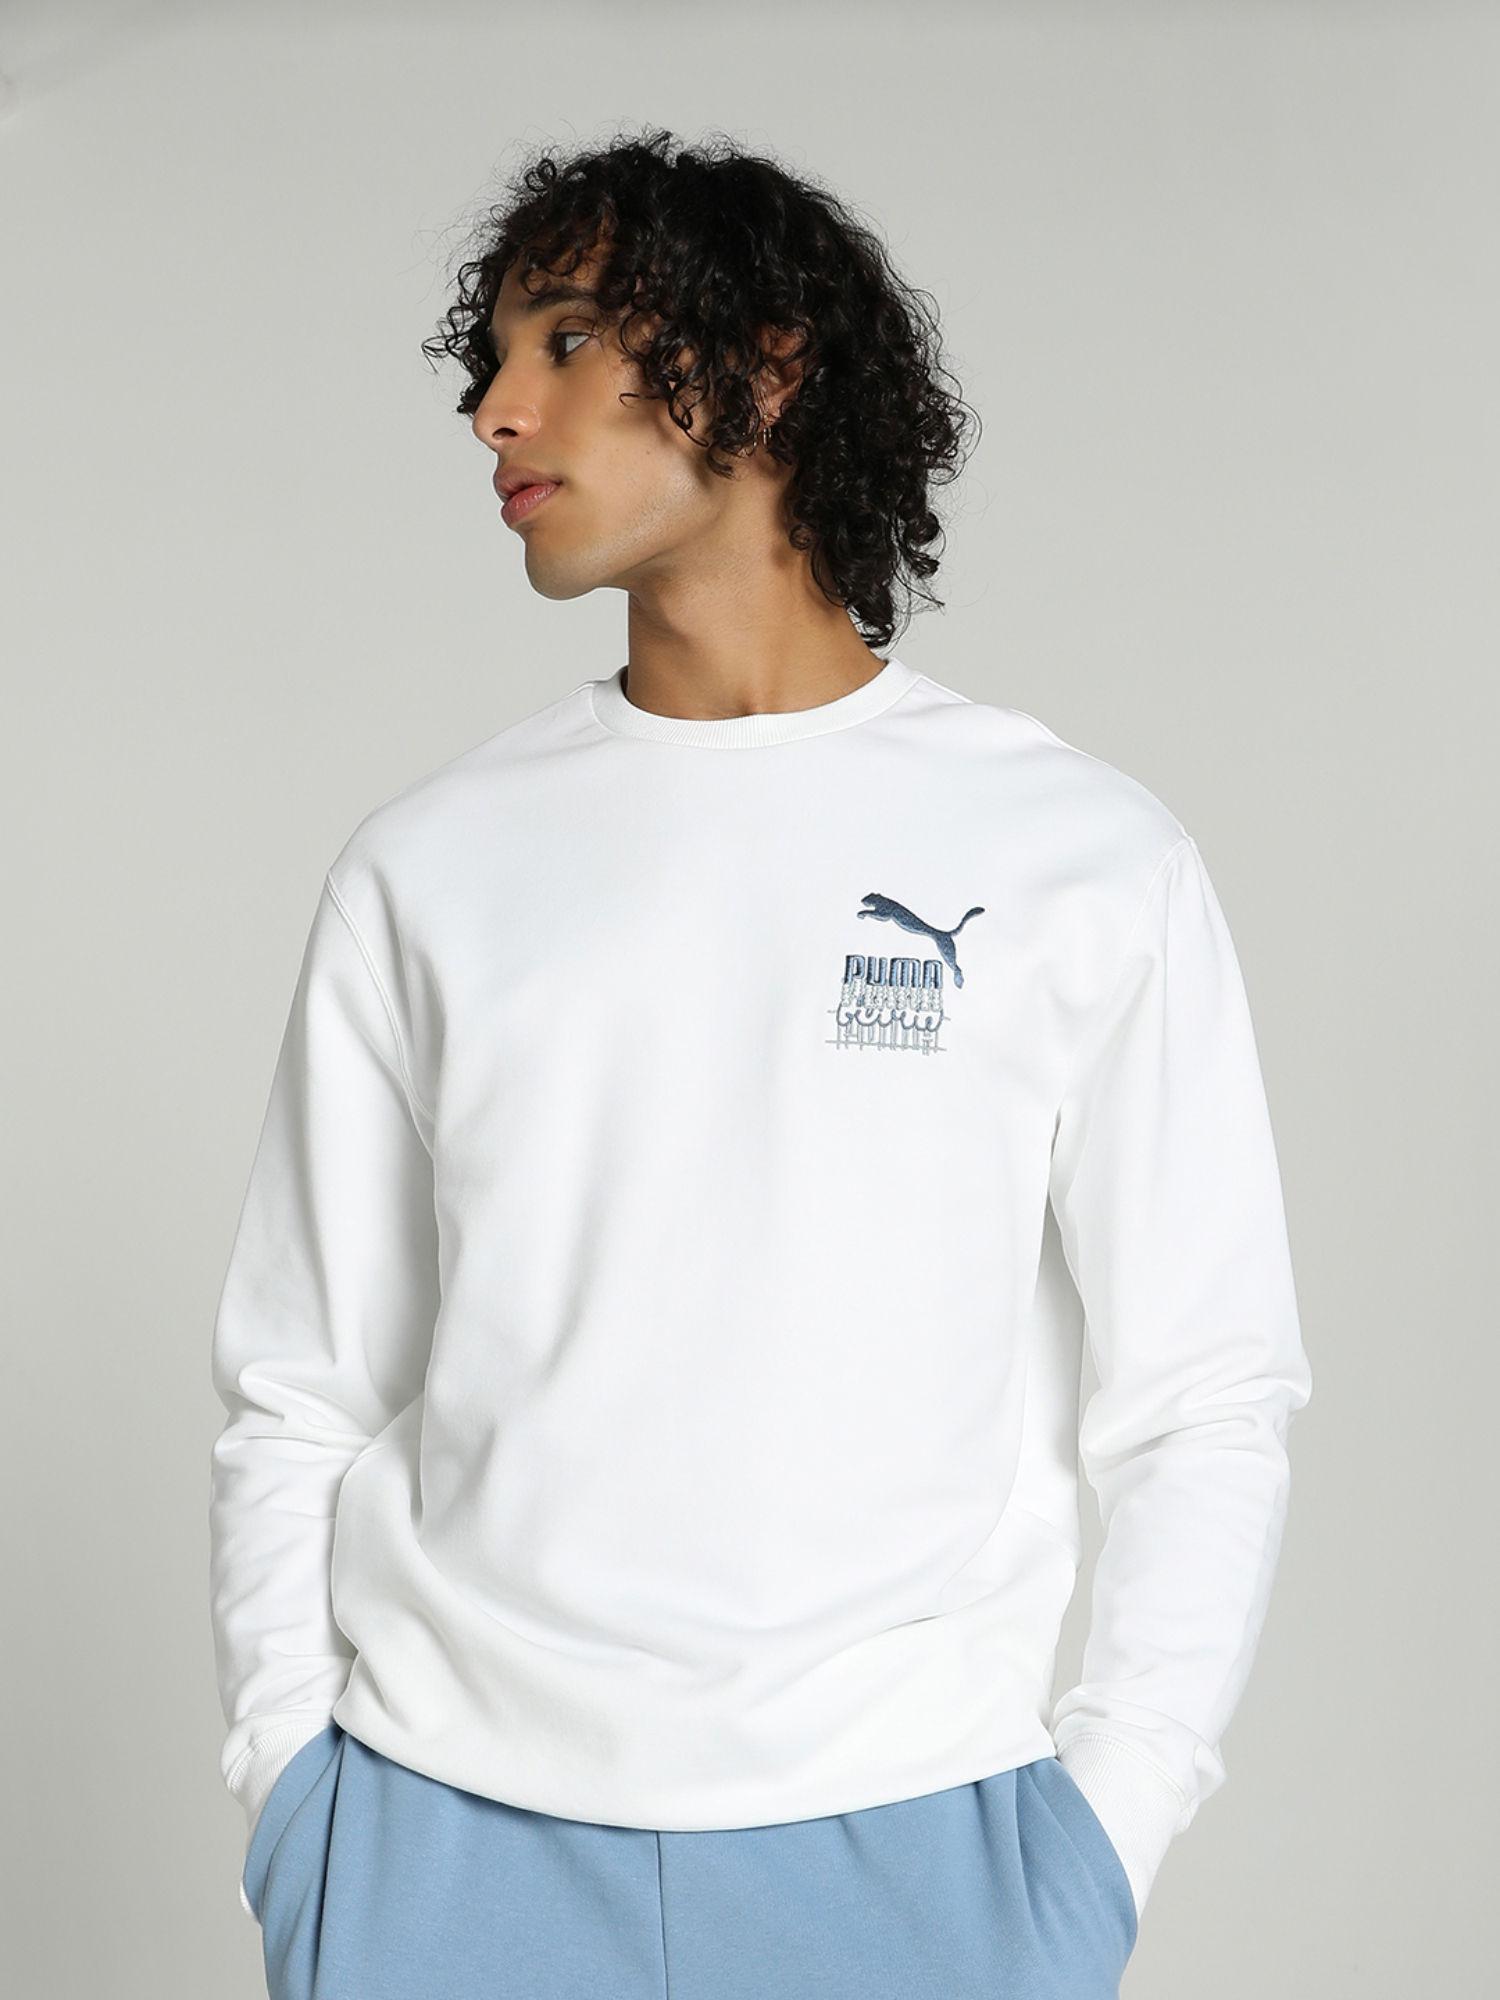 nd-love-crew-mens-white-sweatshirt